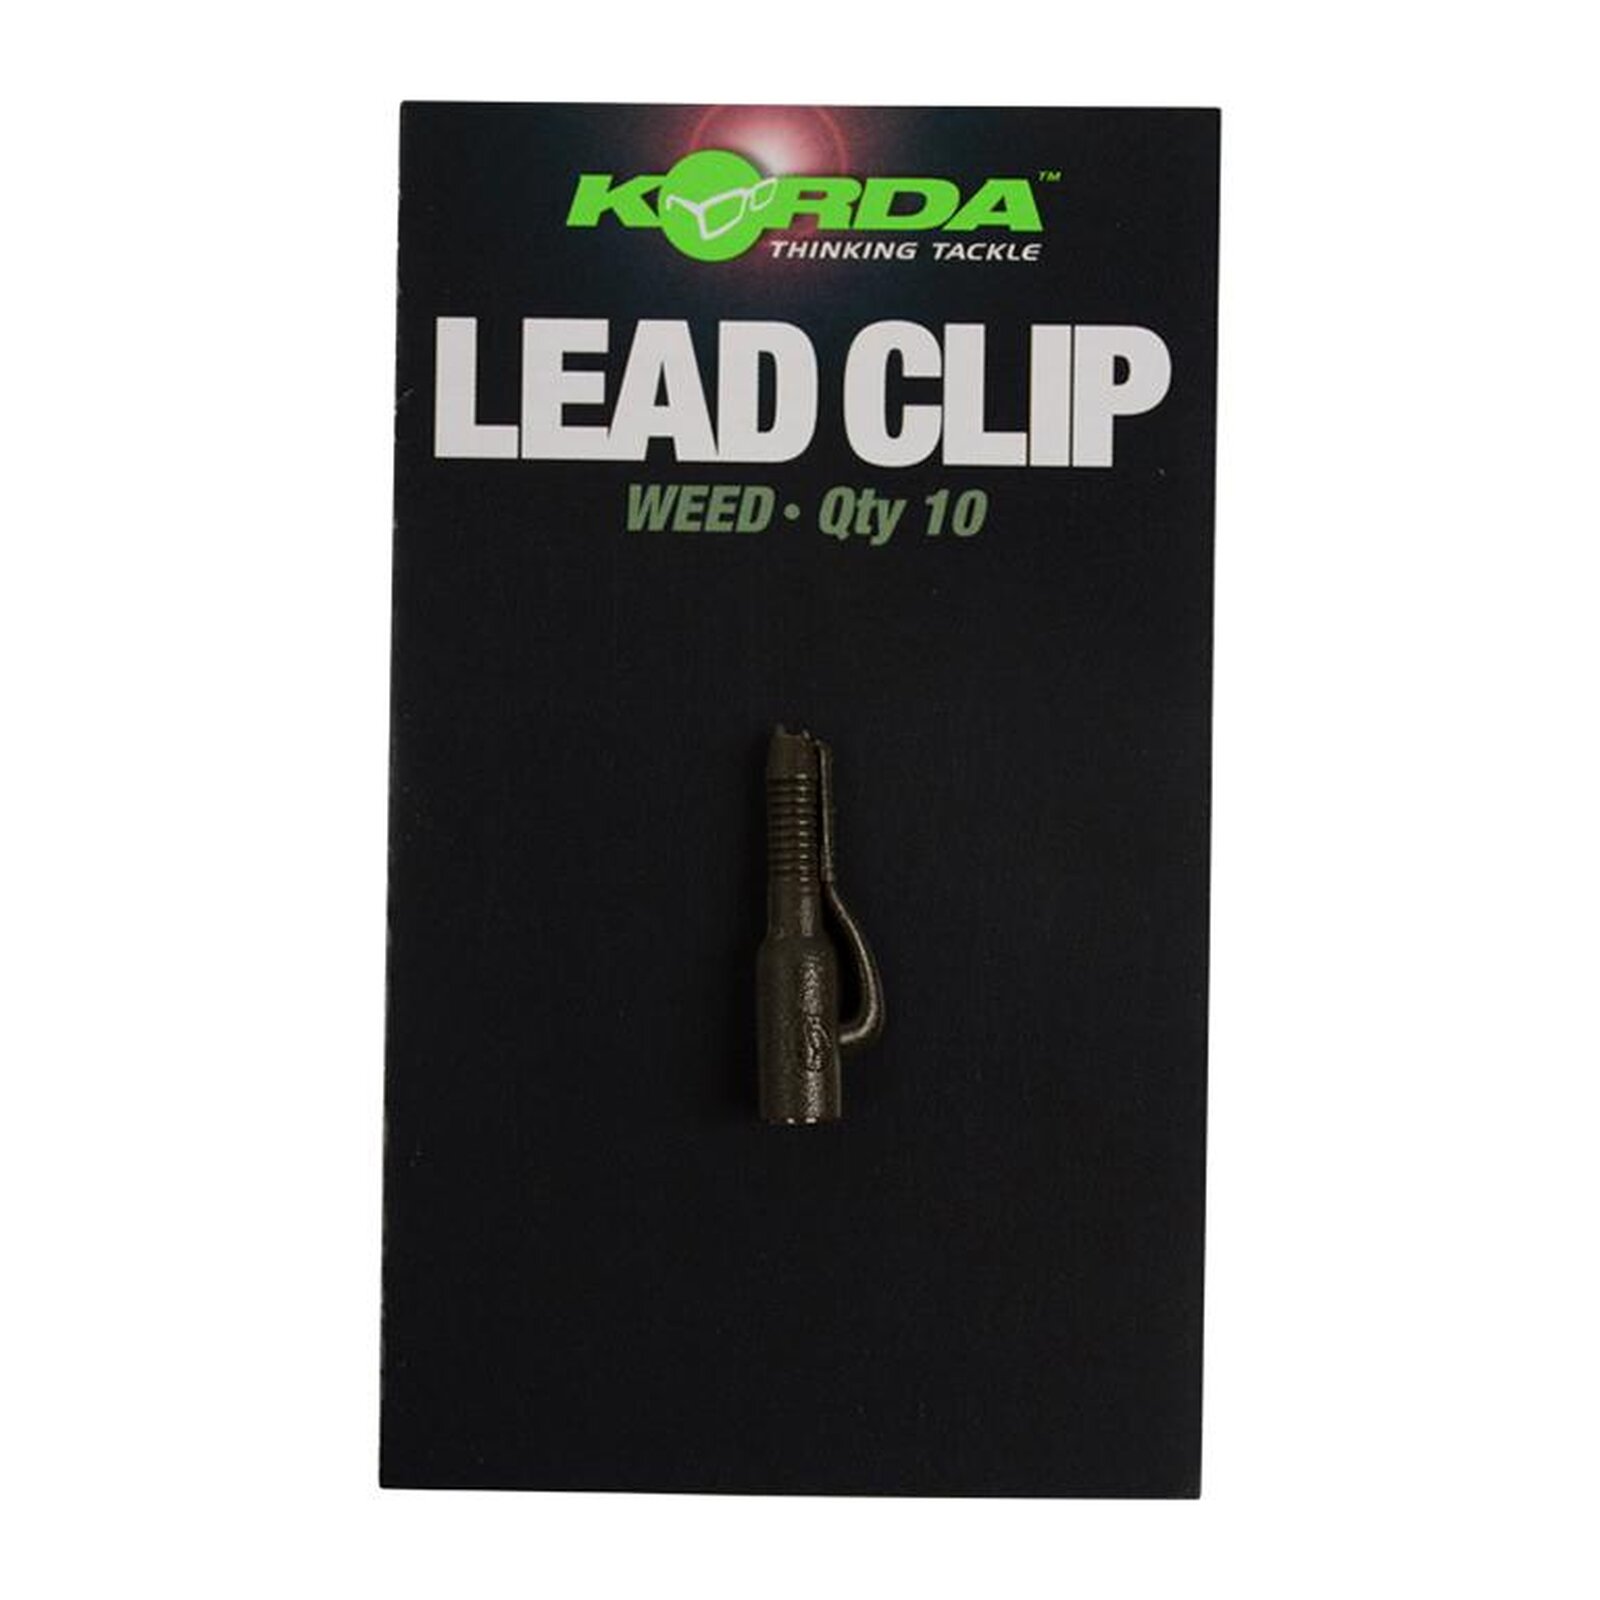 Korda Lead Clip